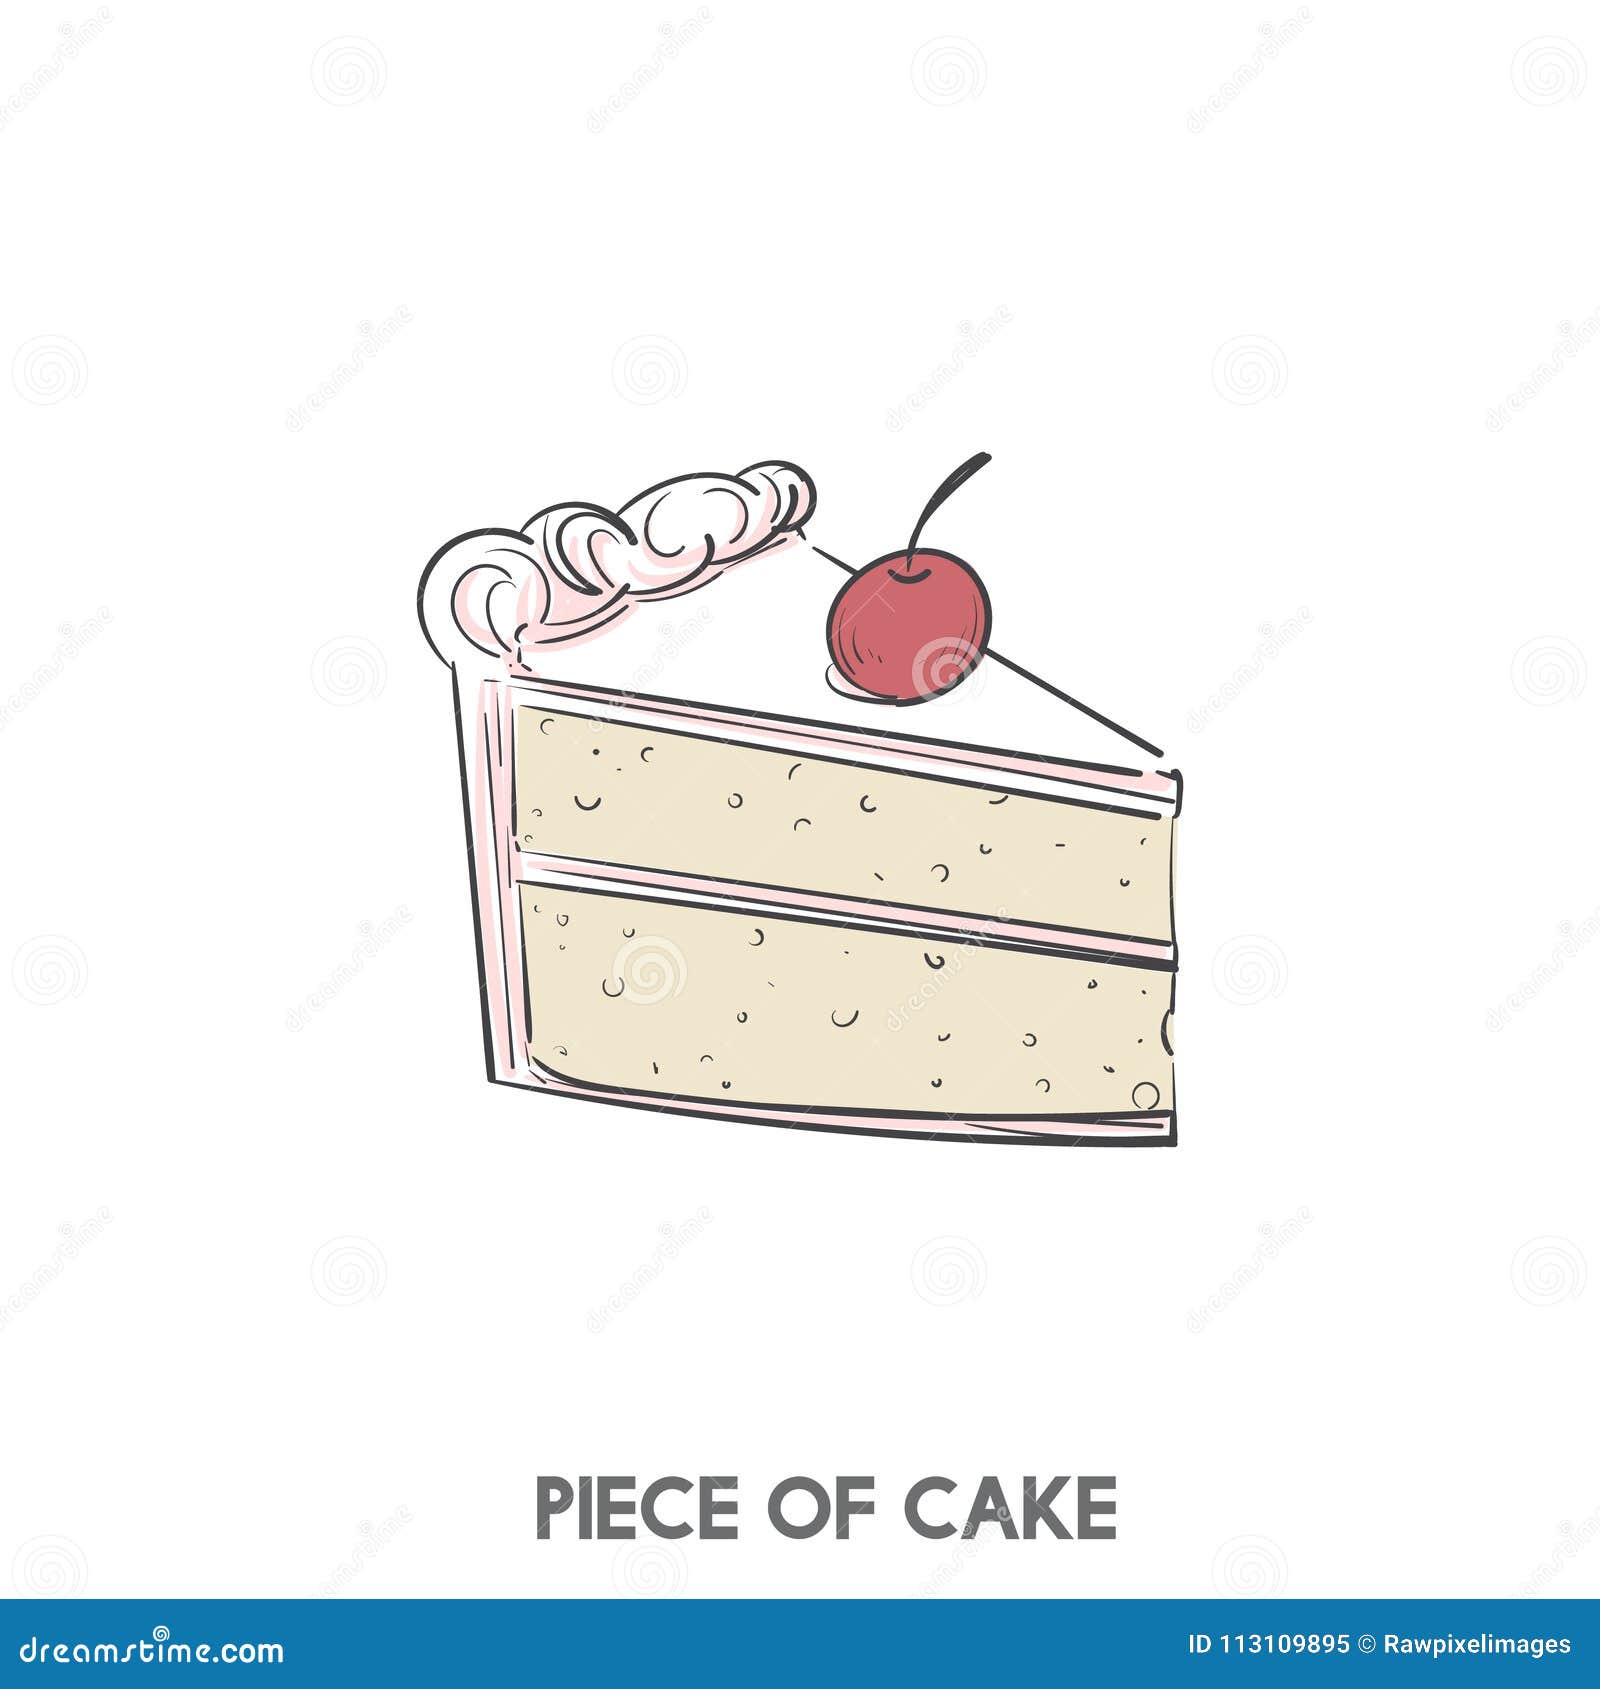 O Que Significa A Piece Of Cake